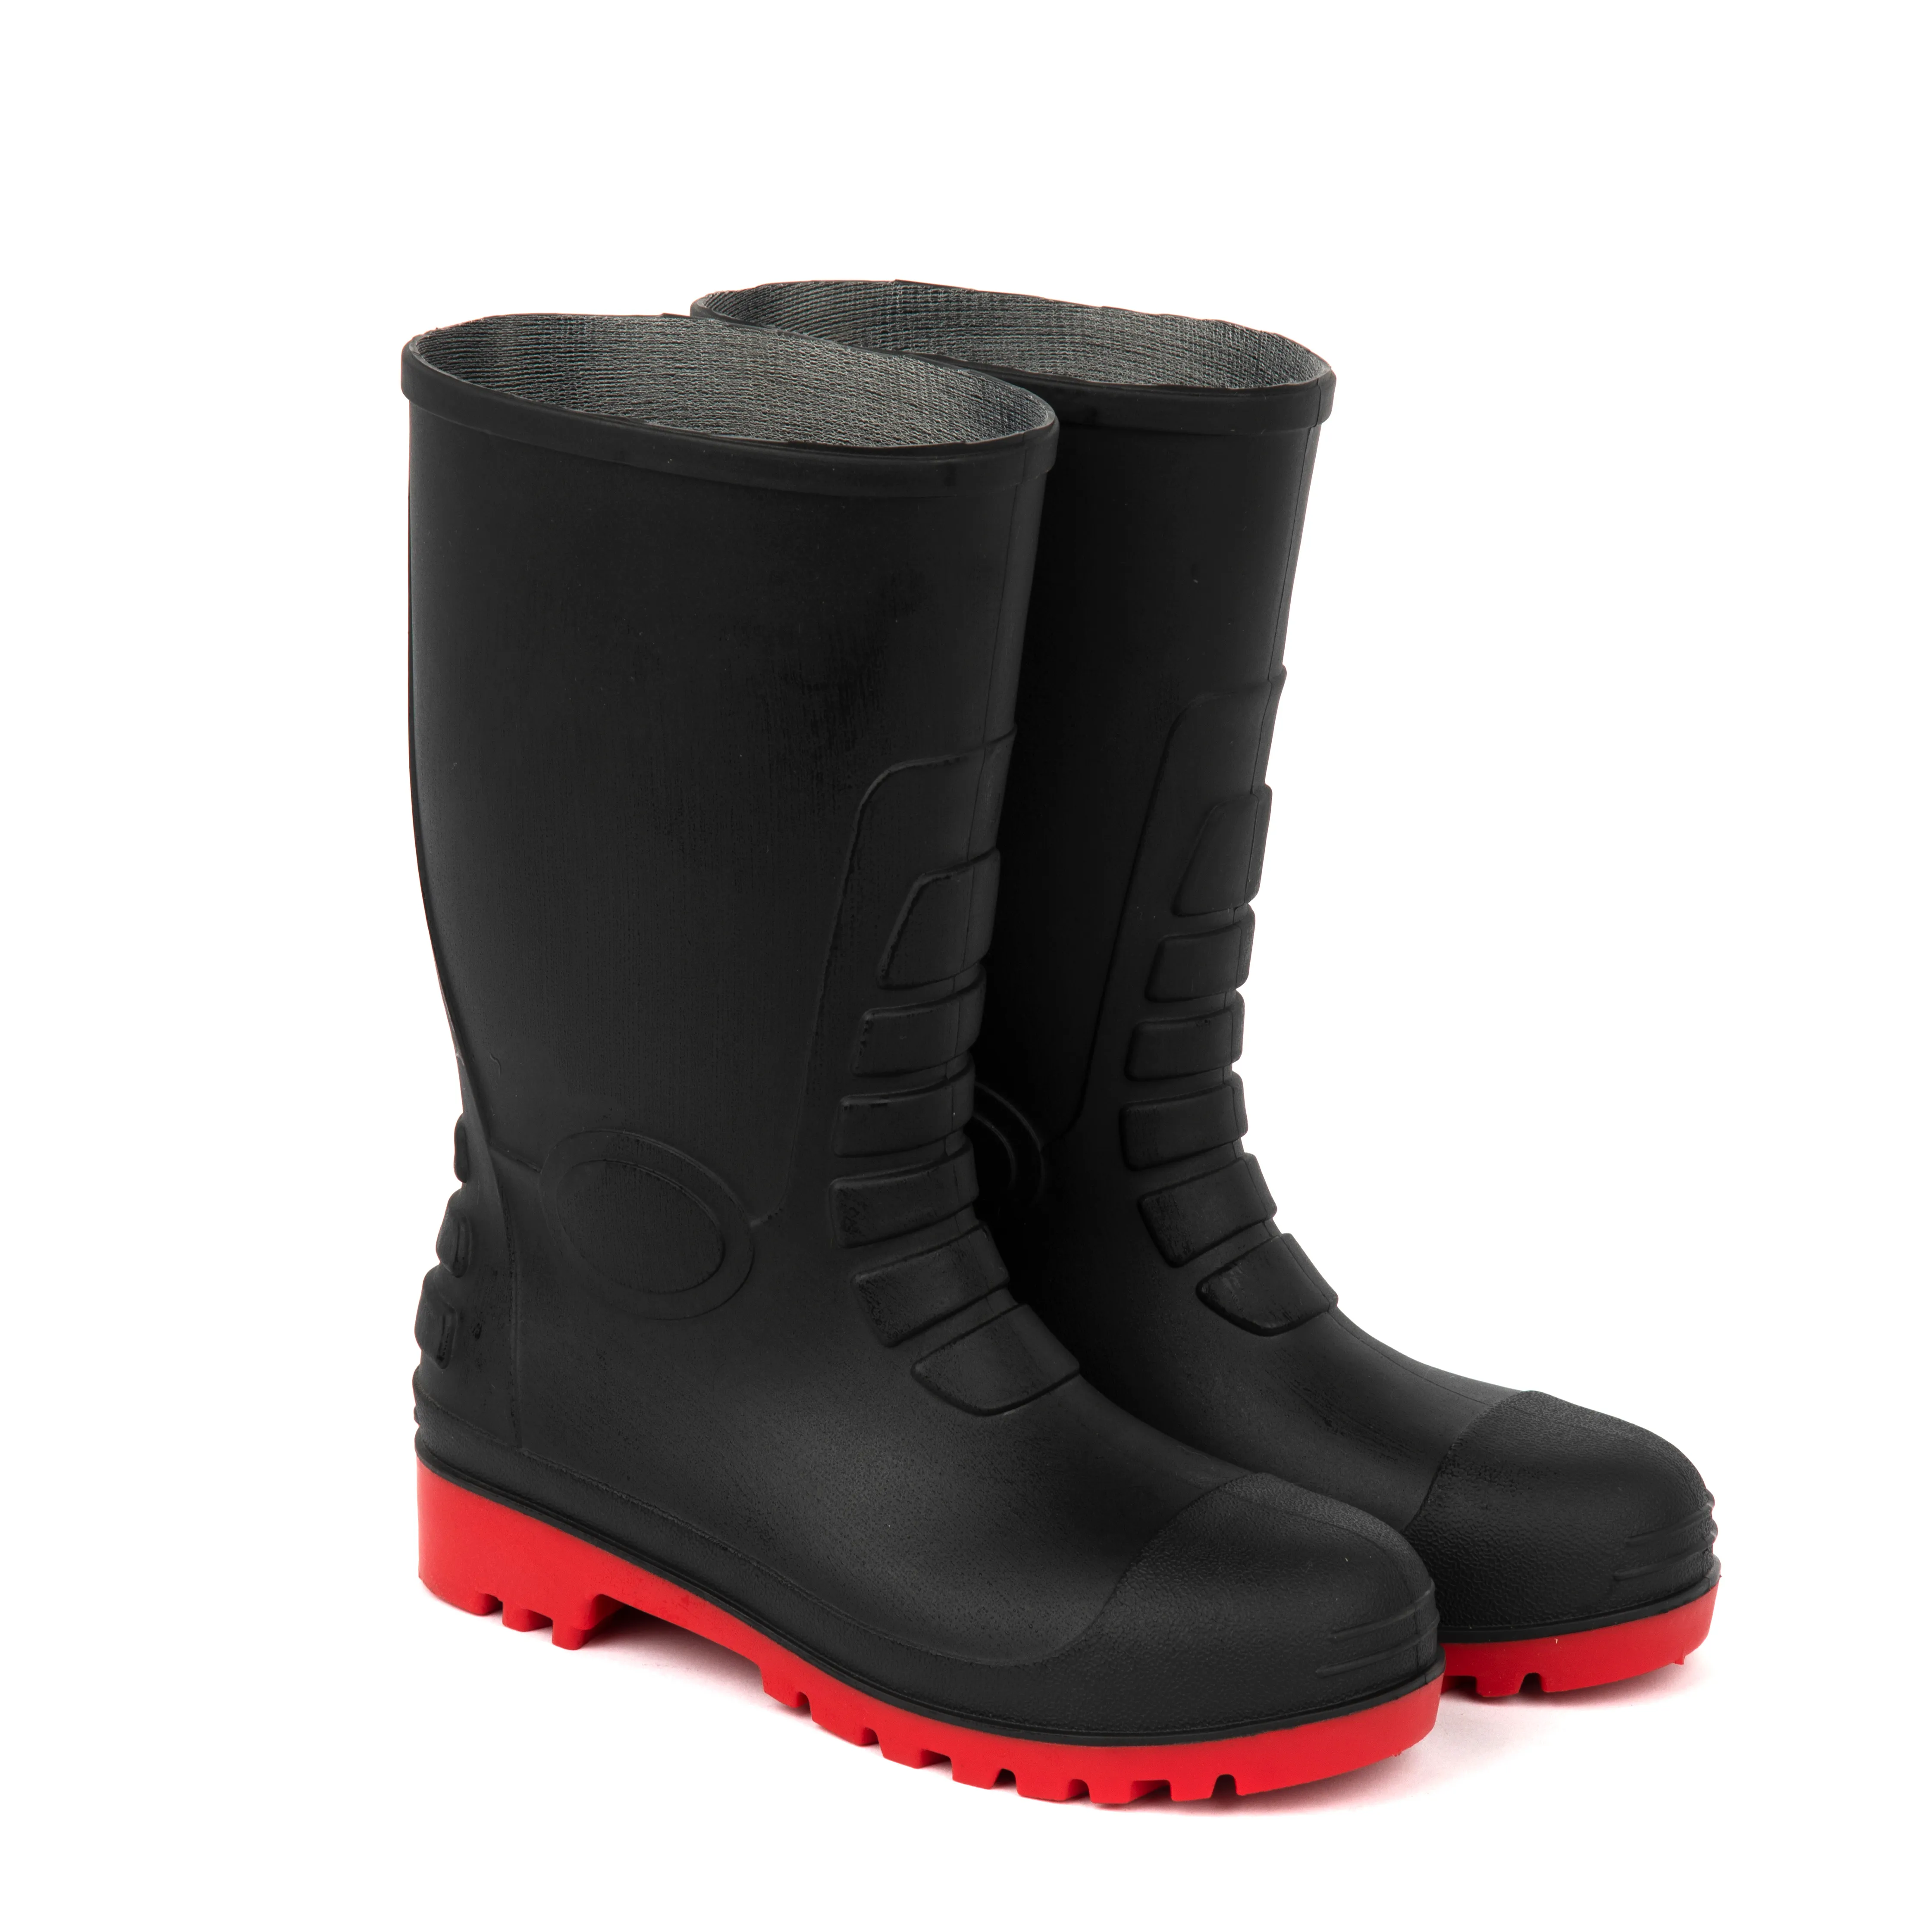 Строительные защитные ботинки, рабочие короткие ПВХ черные резиновые ботинки с красной подошвой